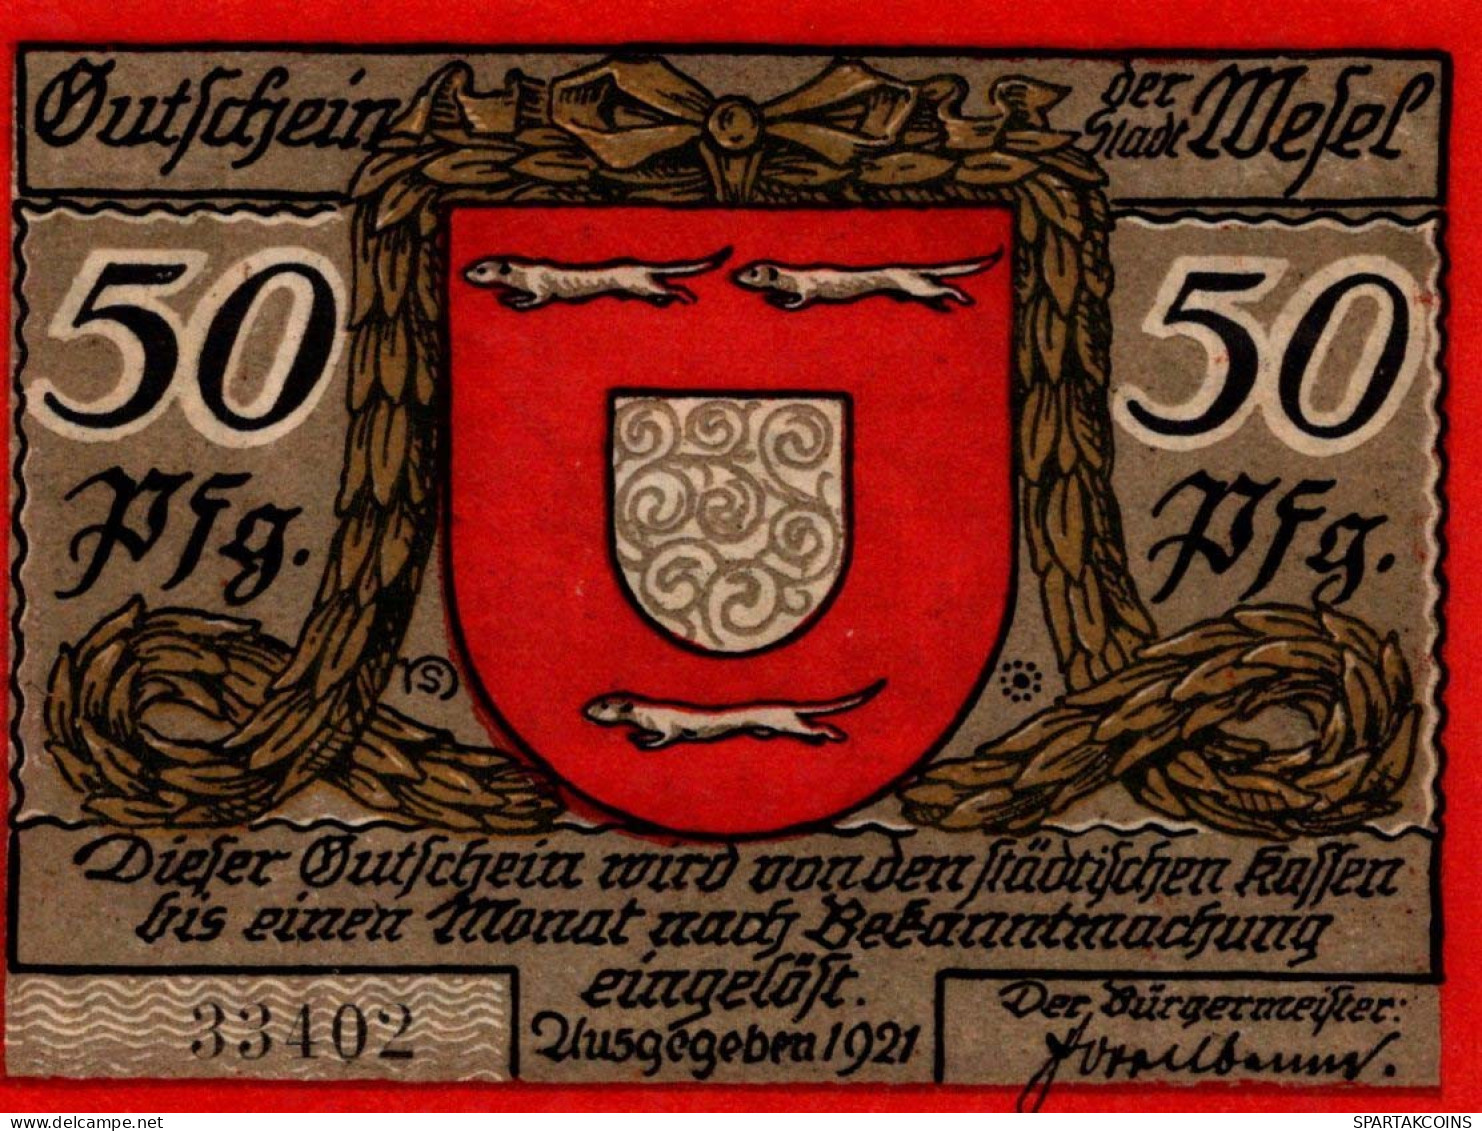 50 PFENNIG 1921 Stadt WESEL Rhine UNC DEUTSCHLAND Notgeld Banknote #PH602 - [11] Local Banknote Issues